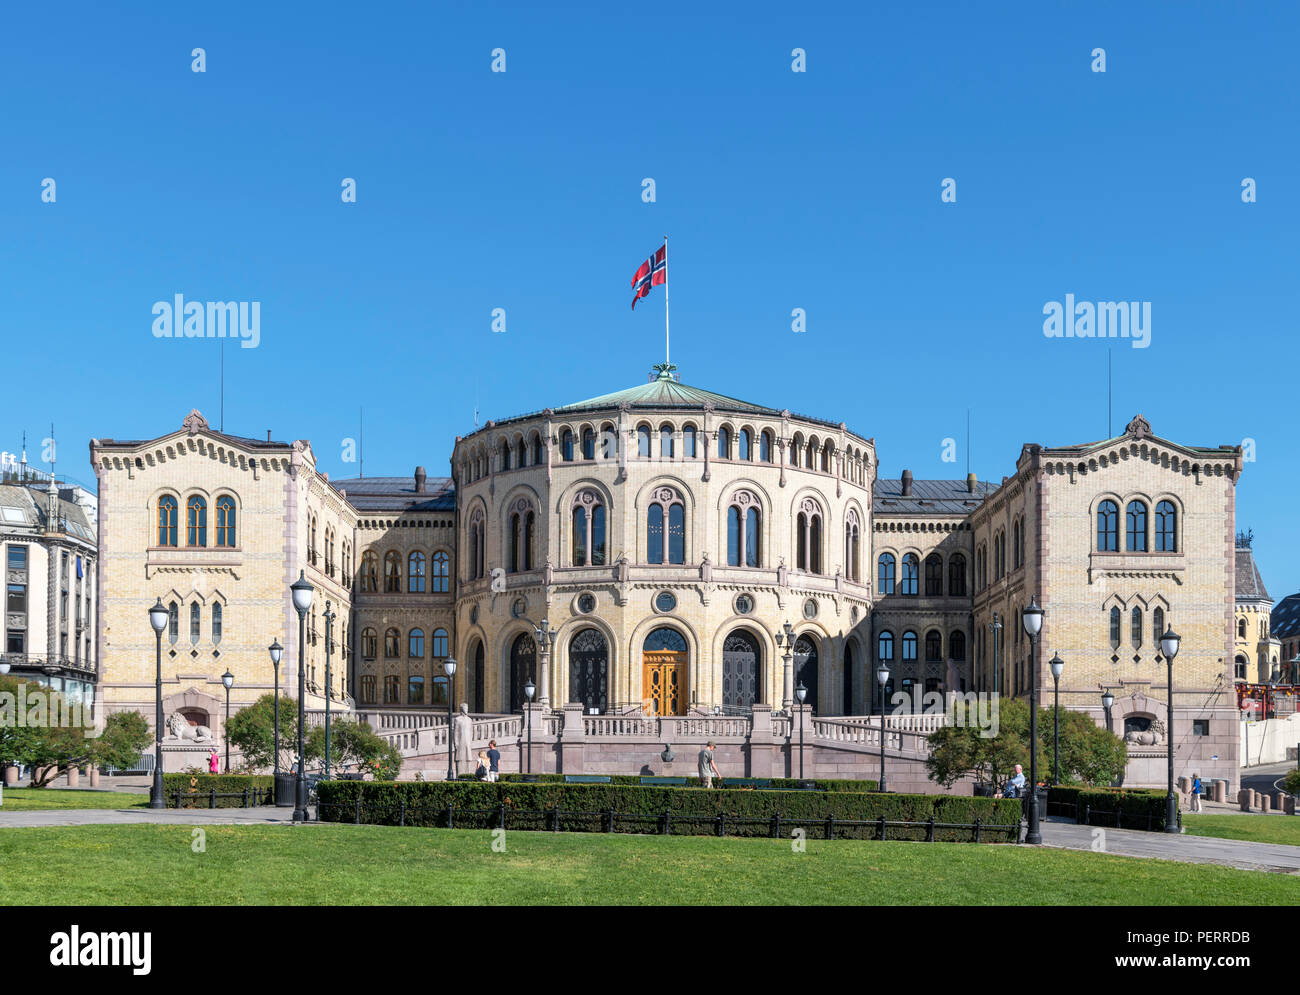 Le bâtiment du parlement norvégien (Storting), Oslo, Norvège Banque D'Images